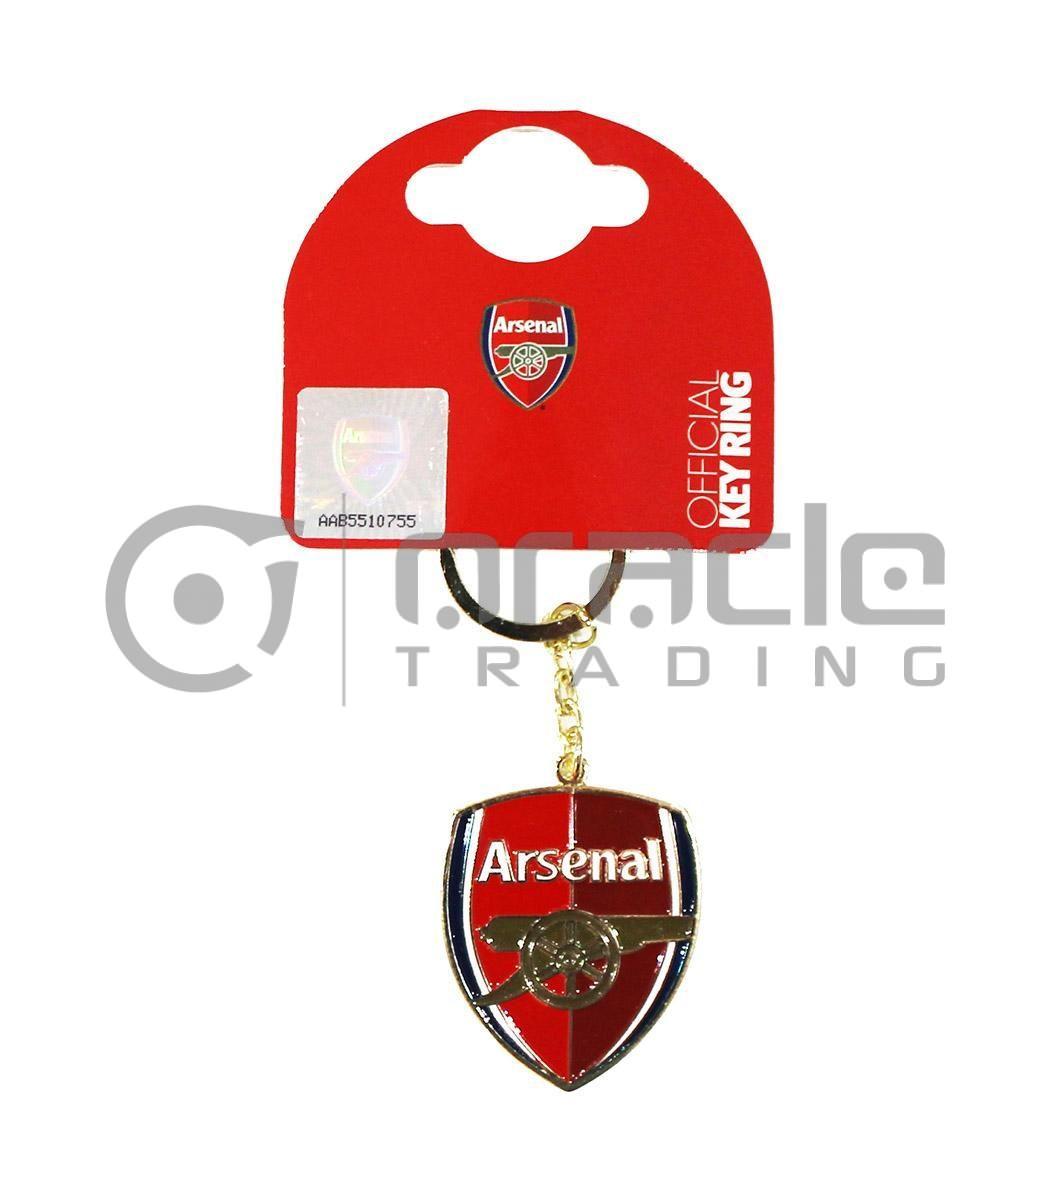 Arsenal Crest Keychain